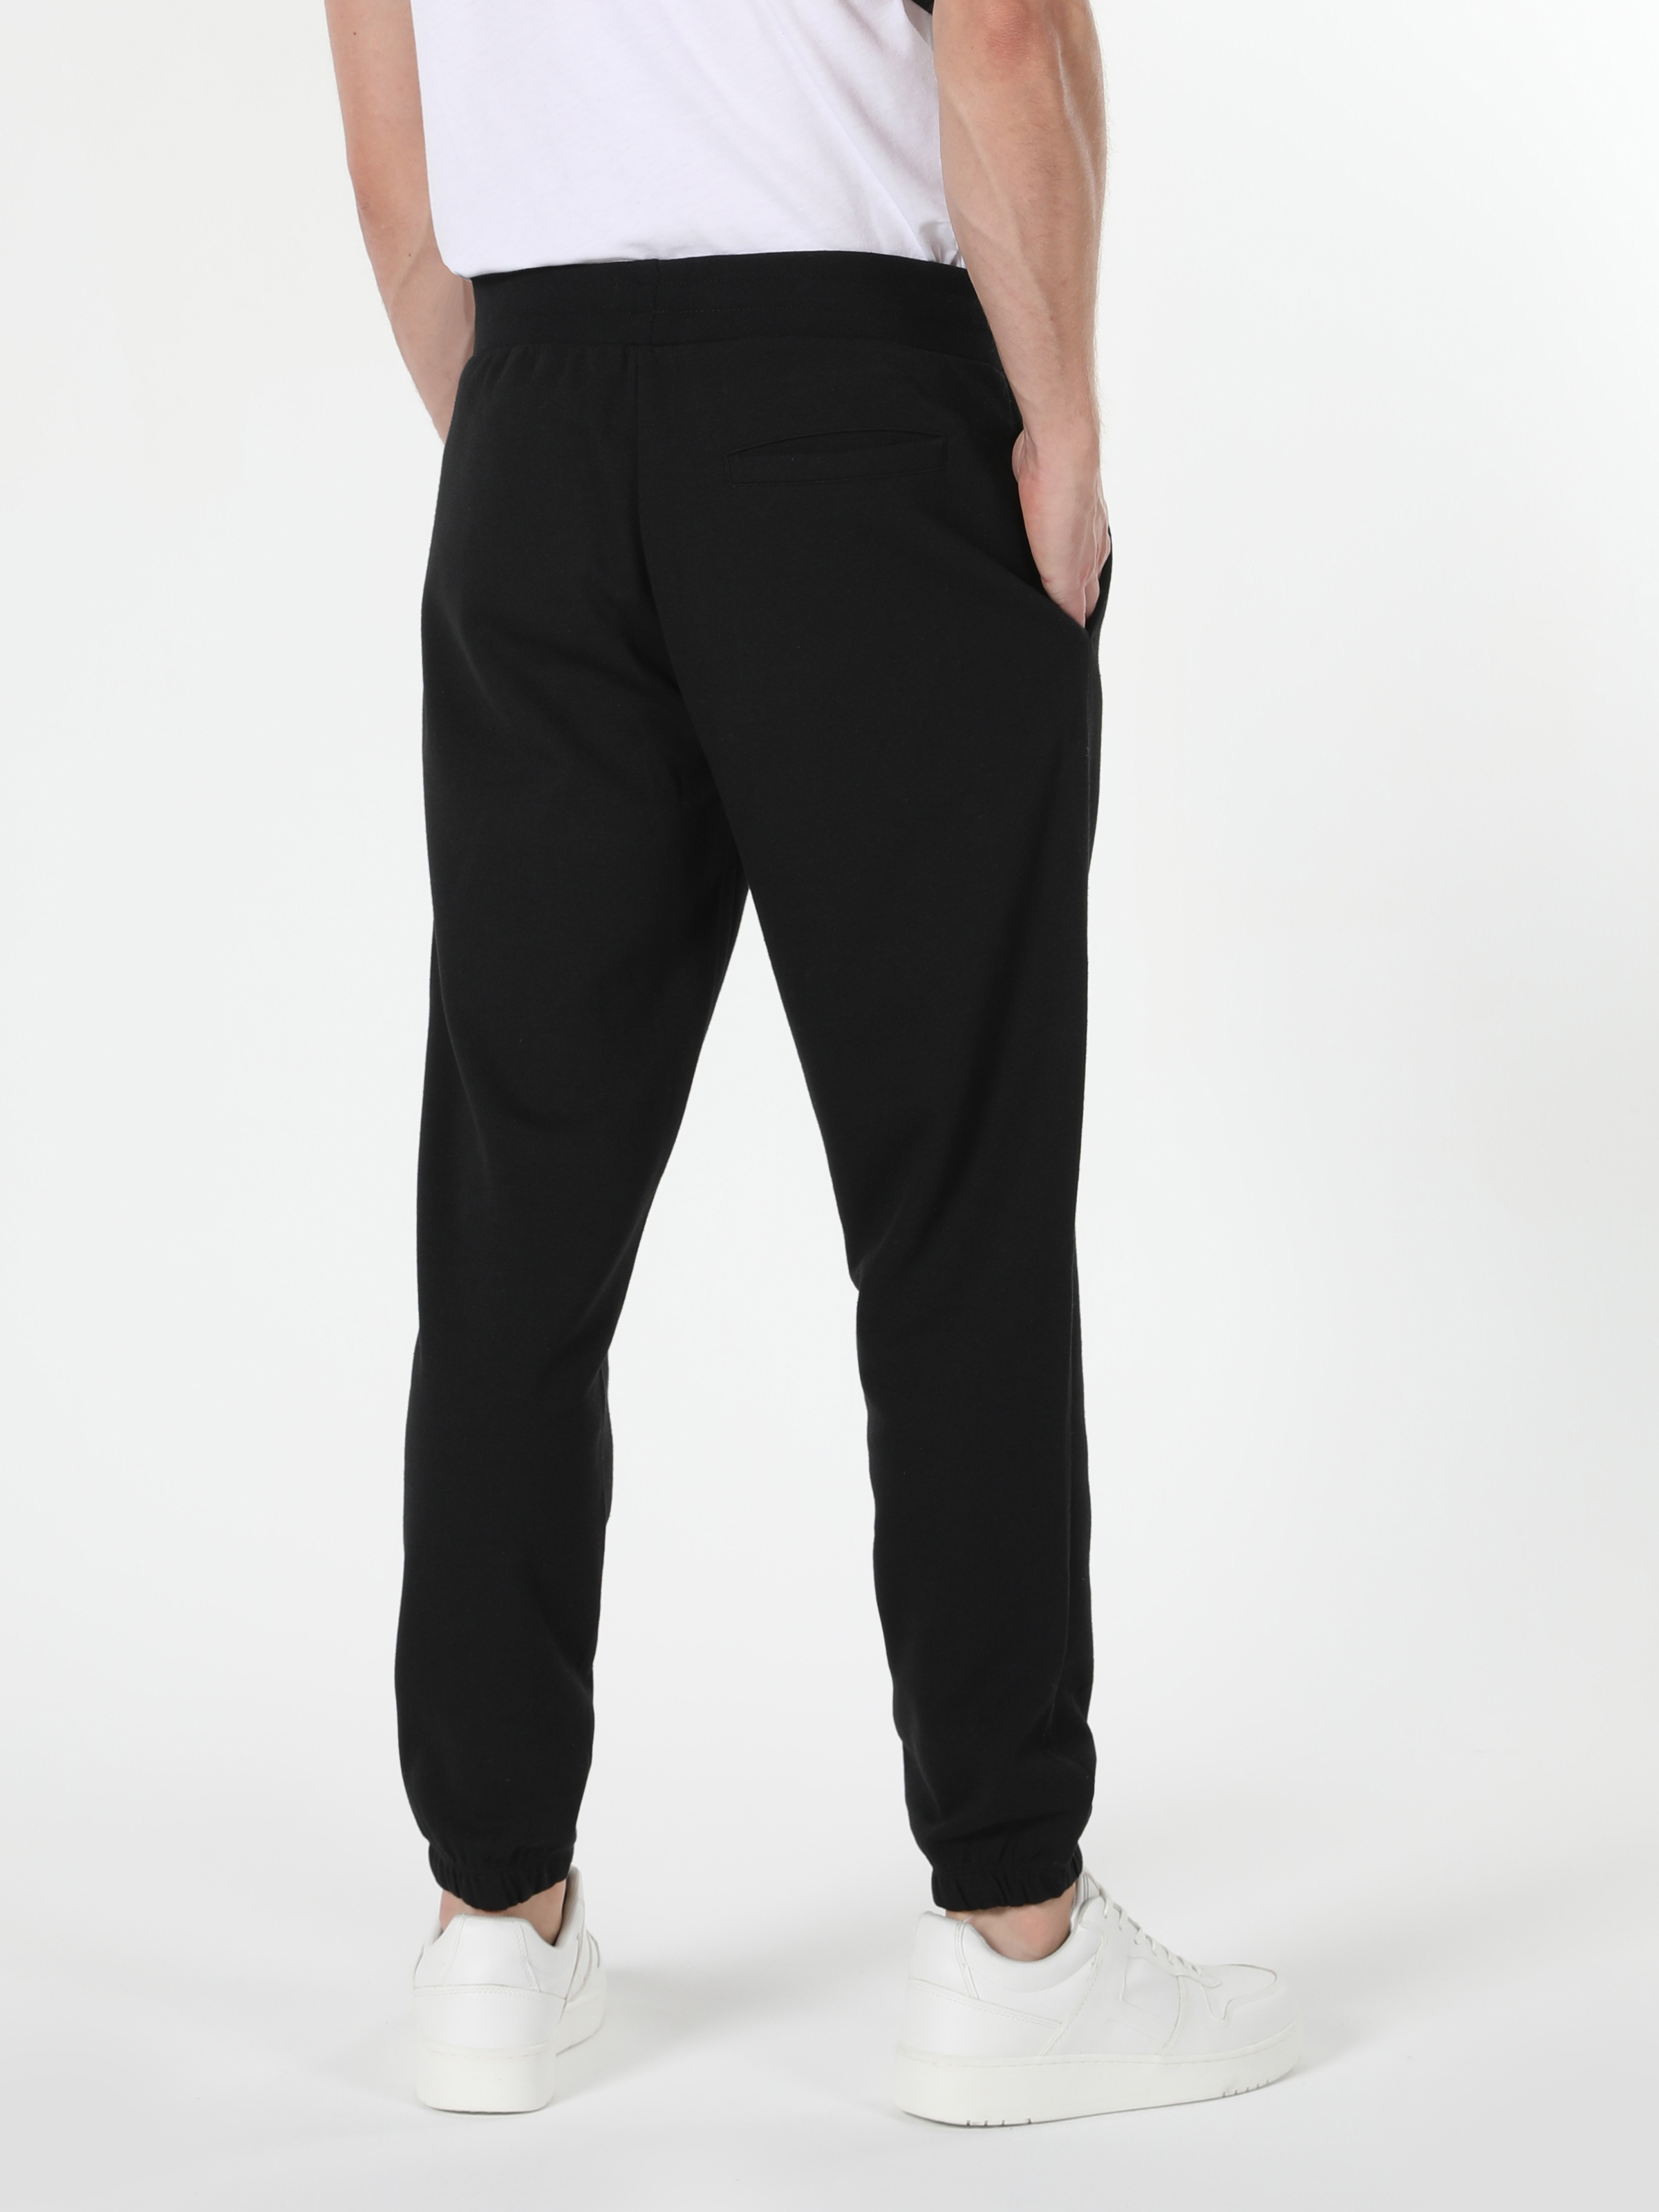 Afficher les détails de Pantalon De Survêtement Noir Taille Moyenne Pour Homme, Coupe Slim